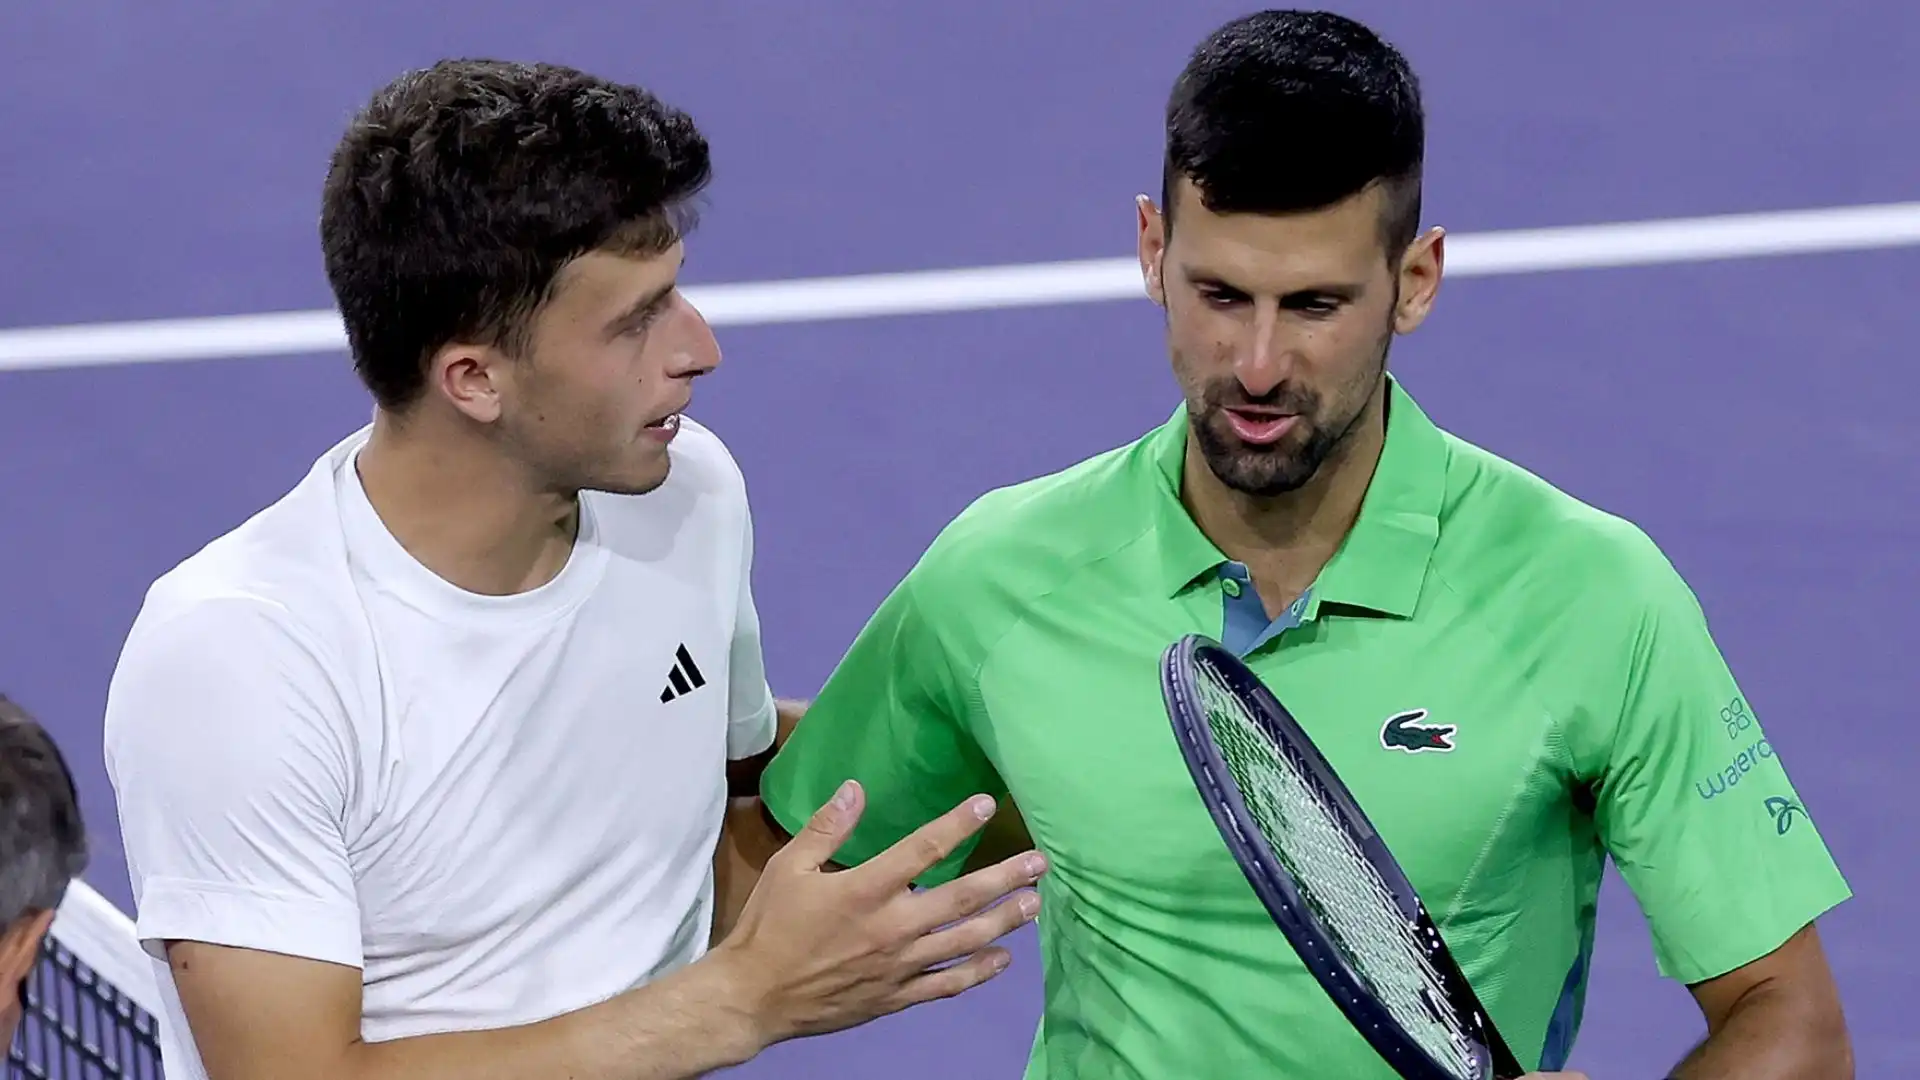 Ora Djokovic potrebbe rivedere la partecipazione a Miami: "Devo pensarci"